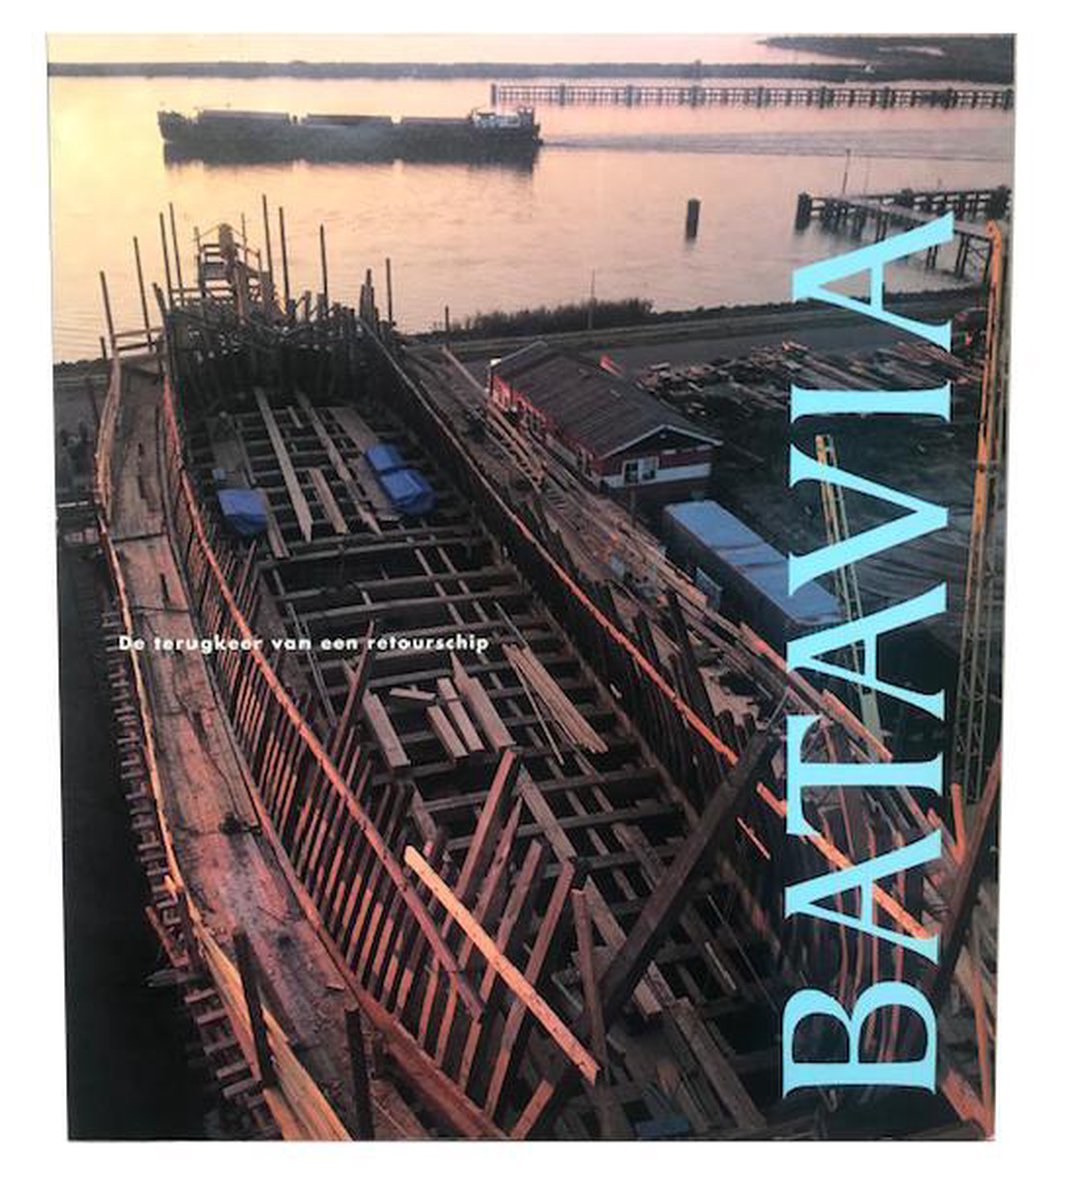 Batavia: De terugkeer van een retourschip